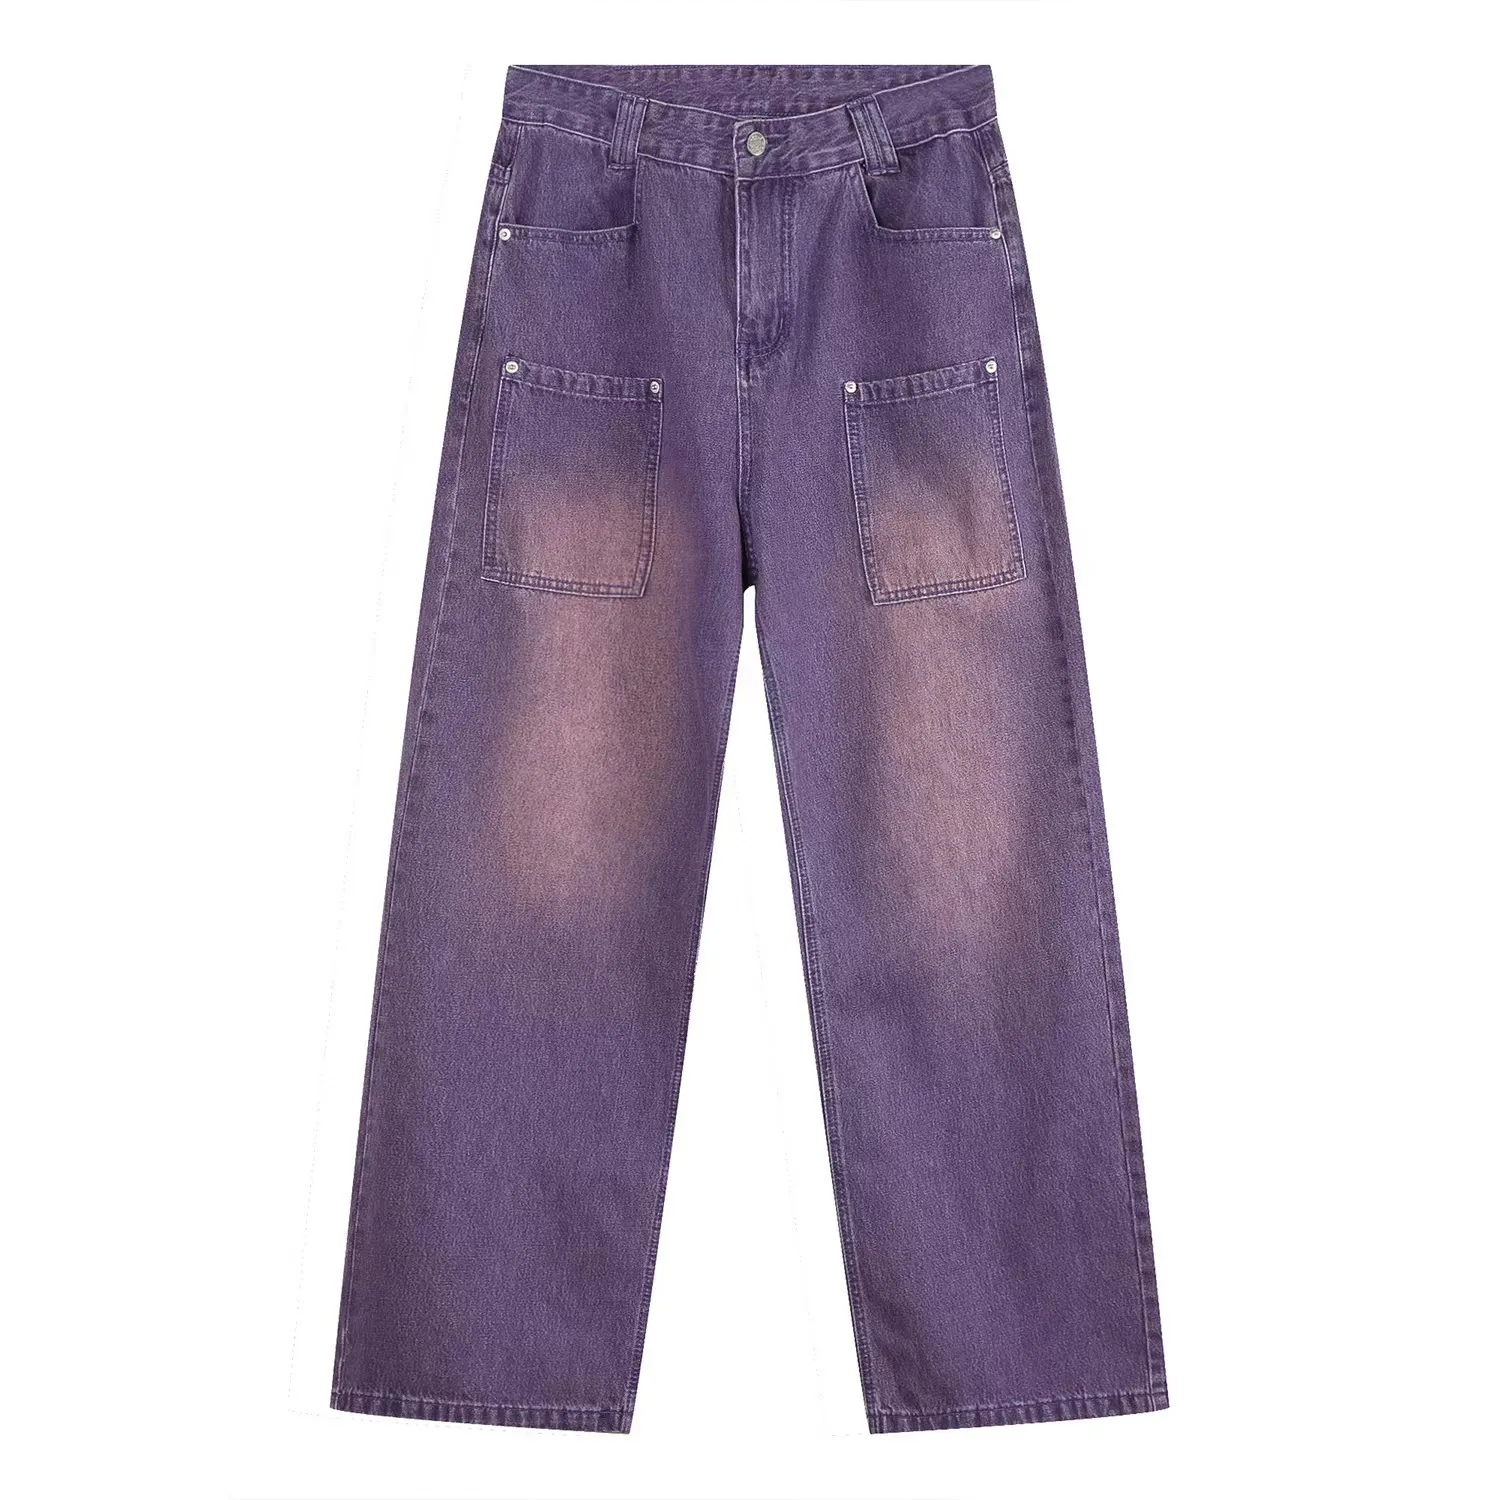 Vintage-Lila-Jeans, gewaschen, um alte CP-Baggy-Jeans zu machen, klassische, einfarbige All-Match-Jeans mit geradem Bein und weitem Bein, männliche Stapelung, Sinn für Freizeithosen, Ins